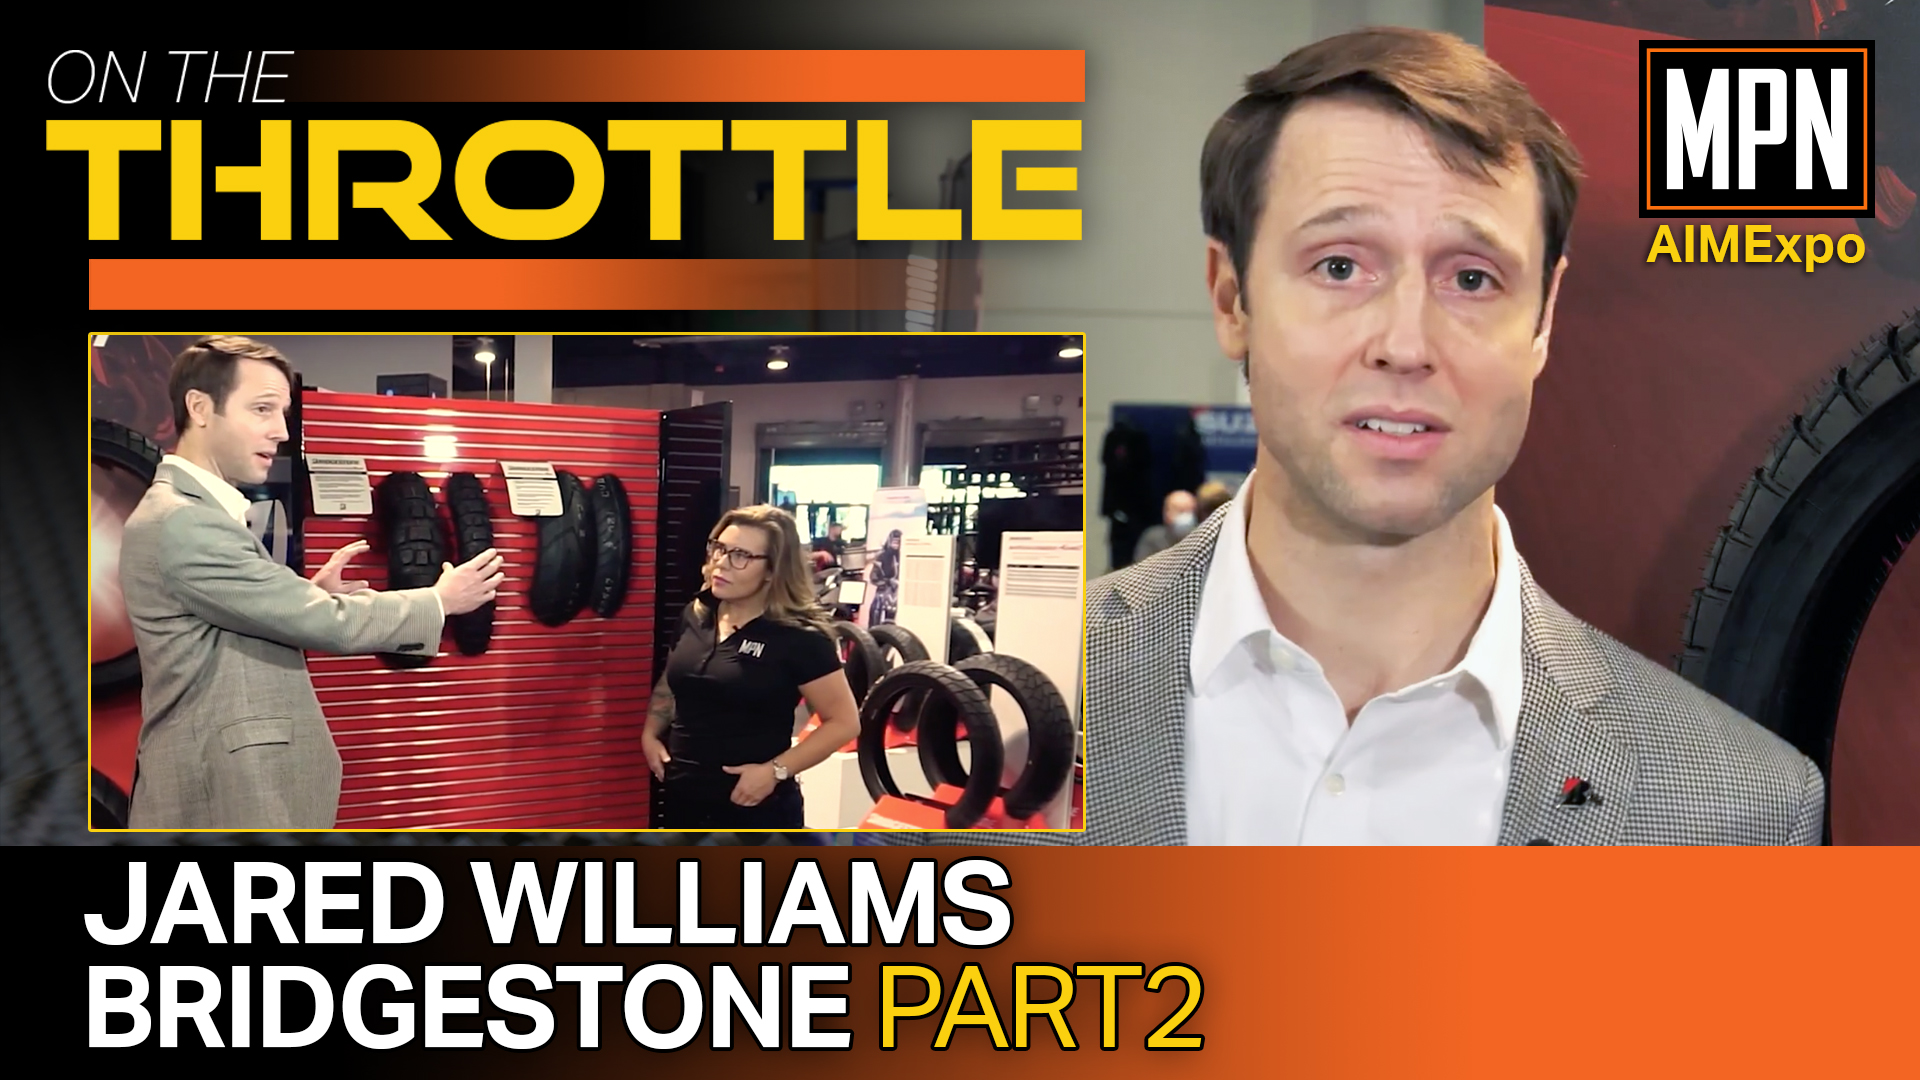 On the Throttle, Jared Williams, Bridgestone